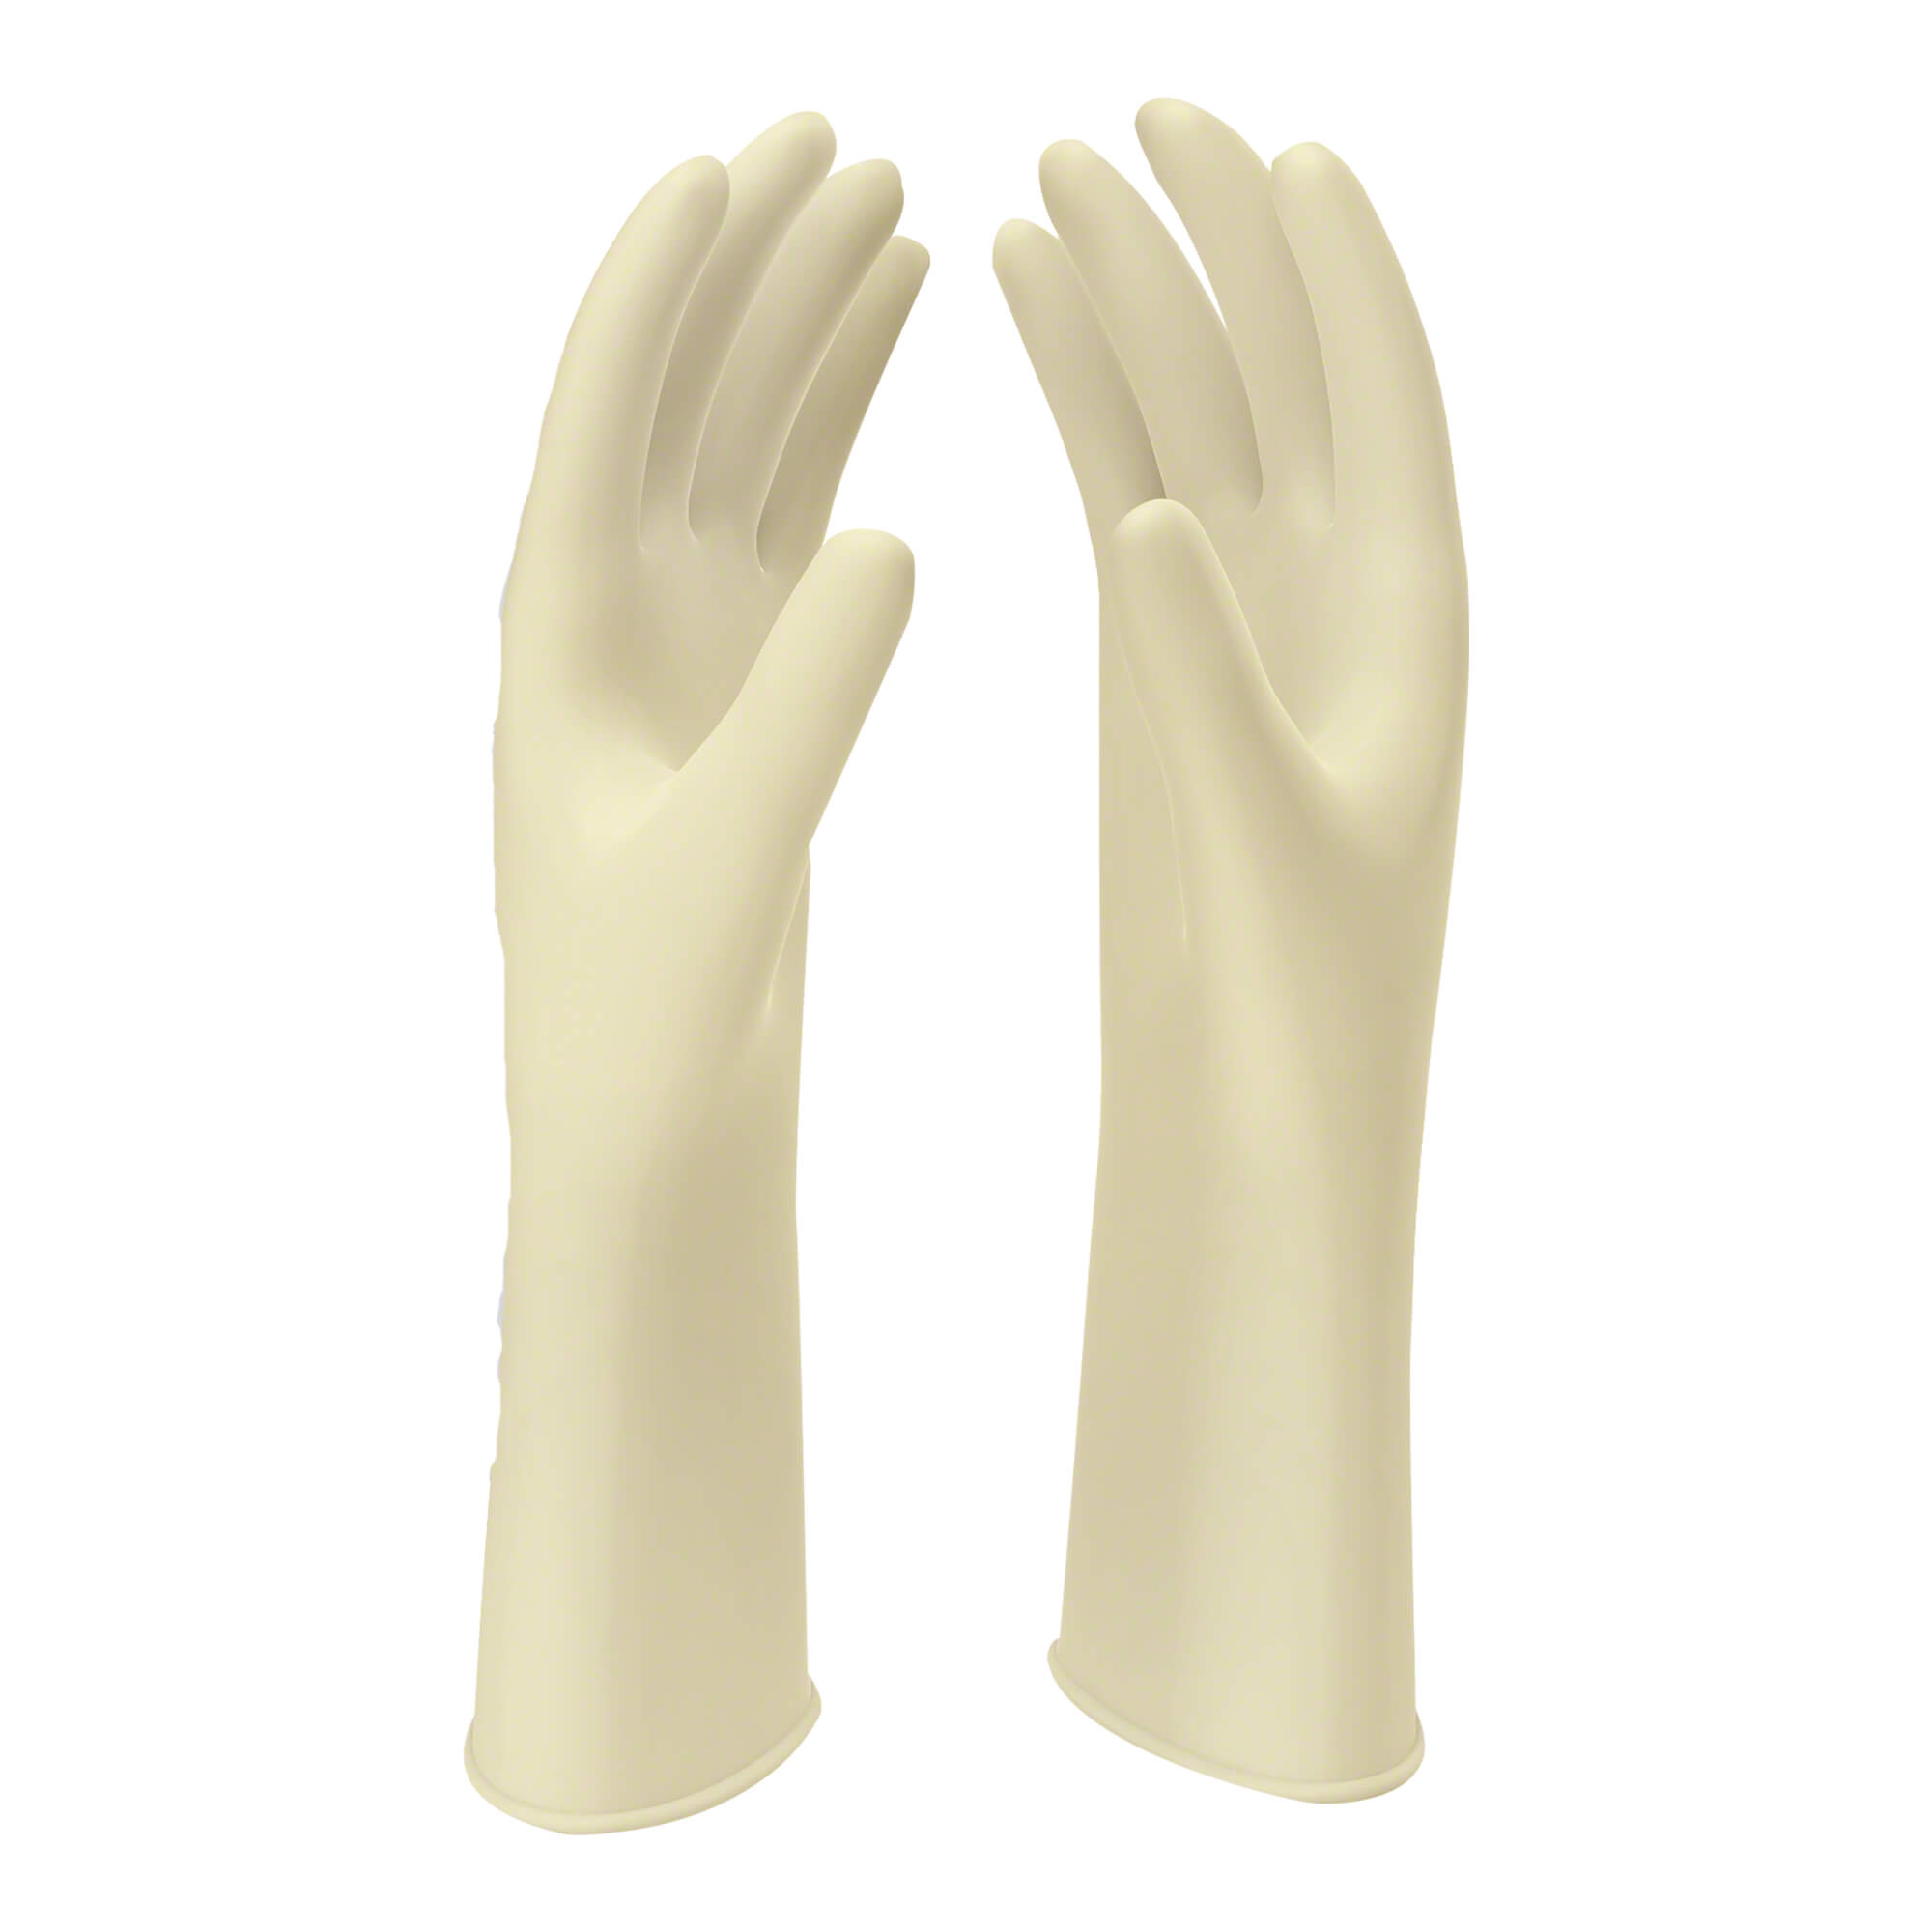 Naturweiße Latex OP-Handschuhe. Größe 8.